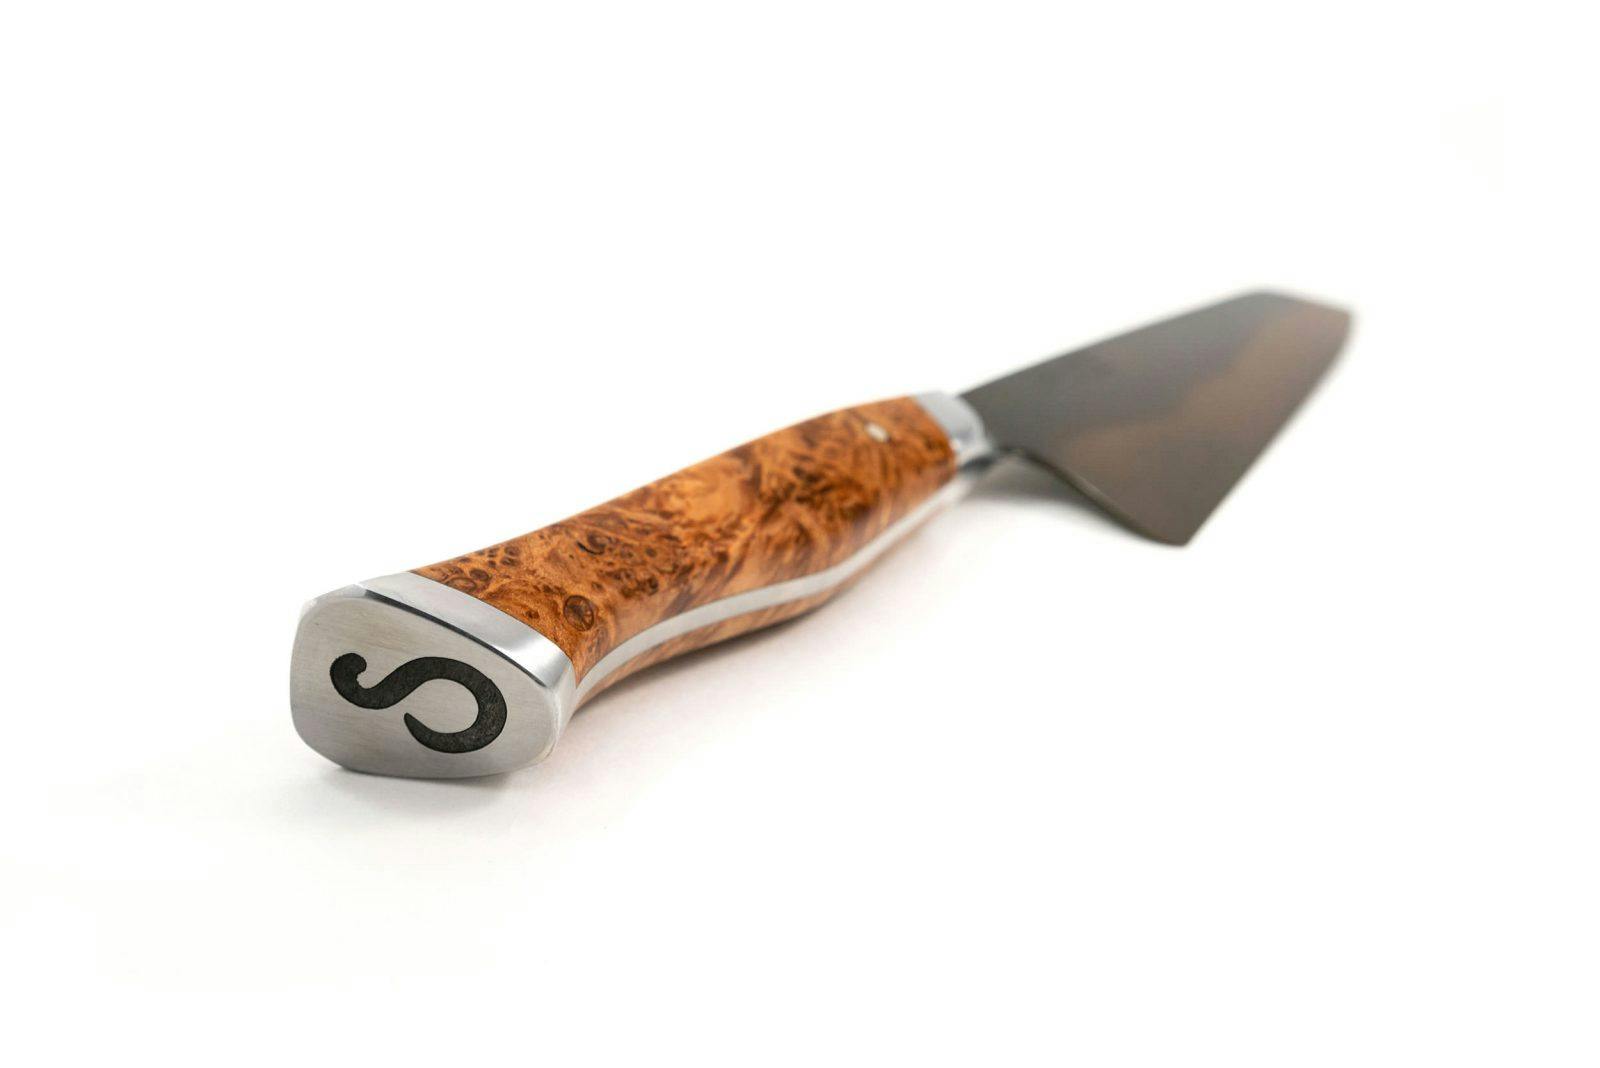 STEELPORT Carbon Steel Chef Knife, 8"